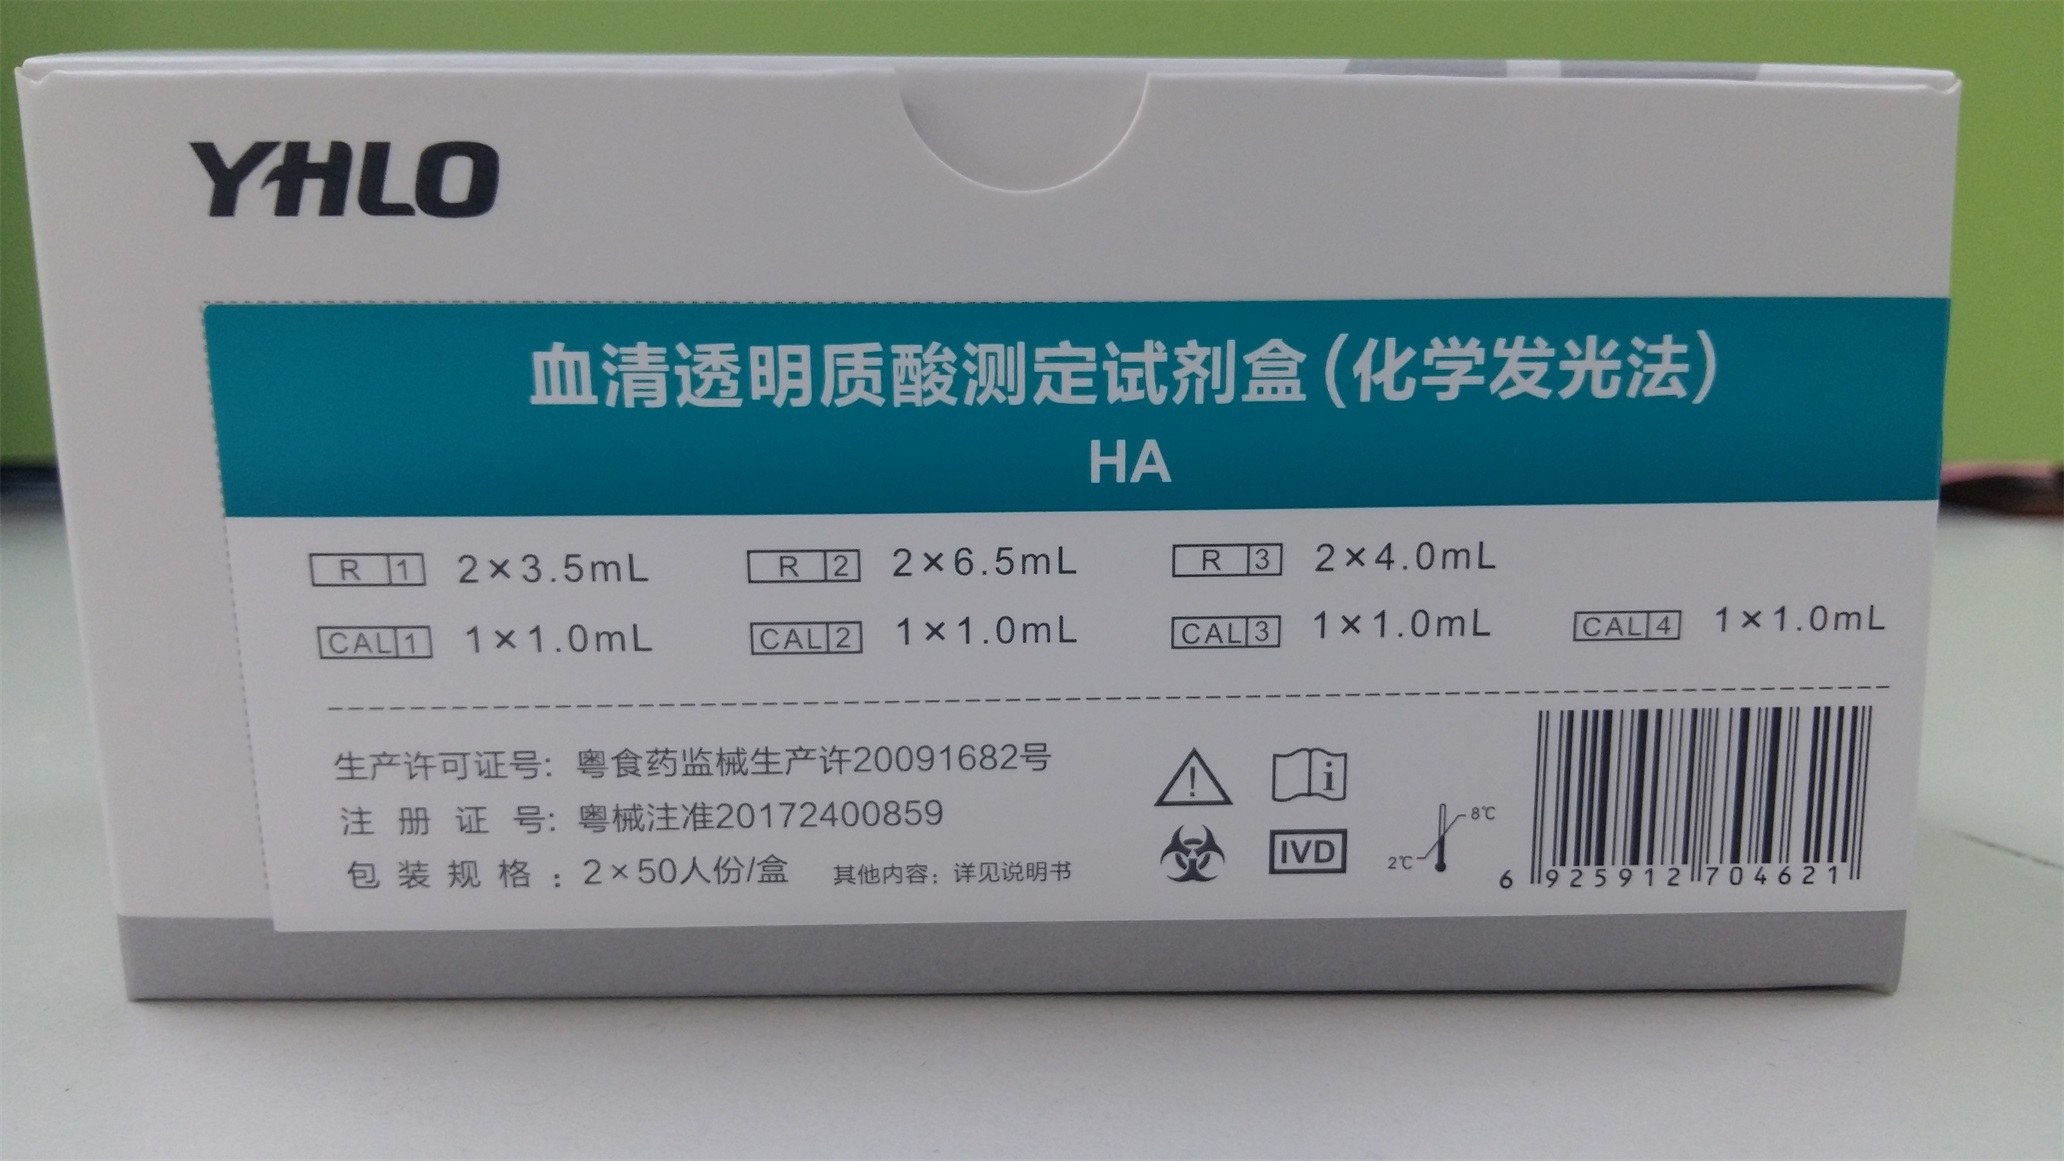 【亚辉龙】血清透明质酸测定试剂盒(化学发光法)-云医购